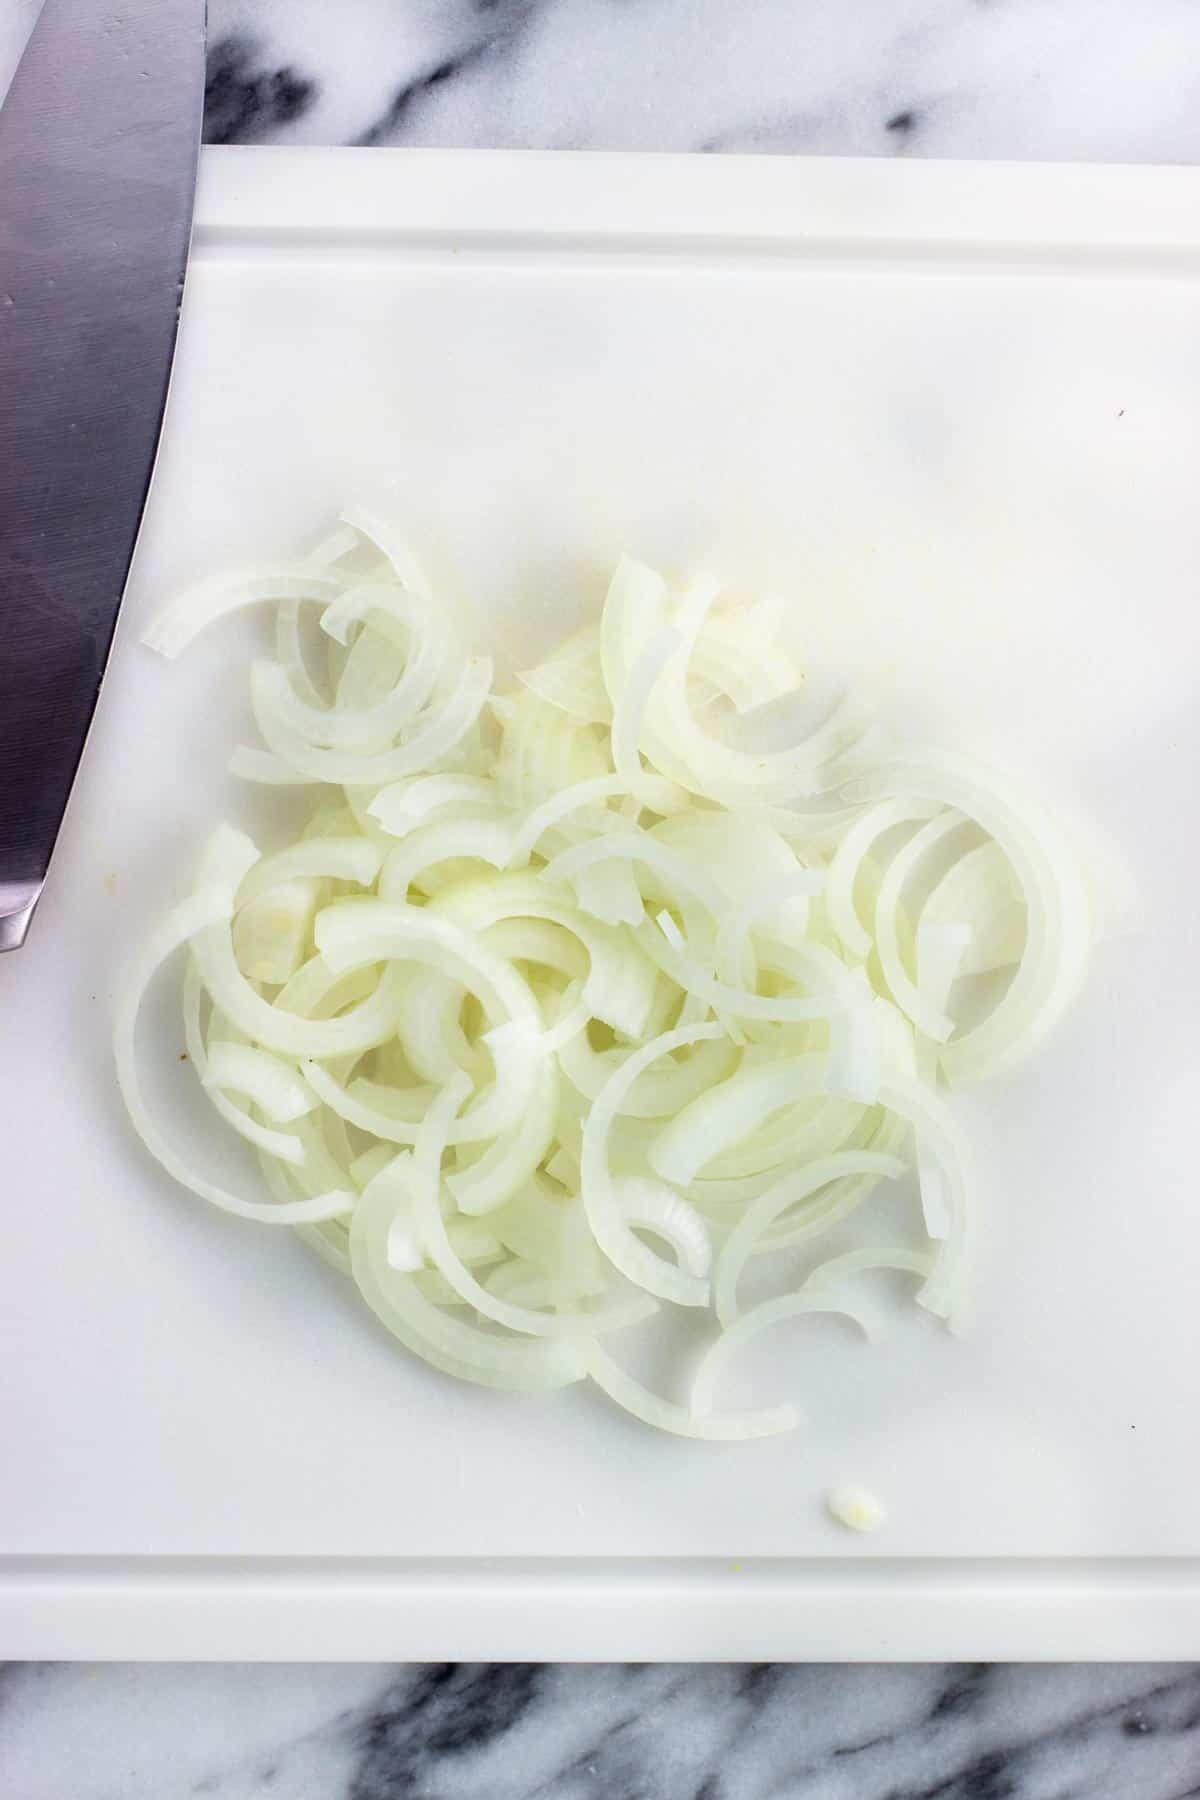 Sliced onion on a cutting board.